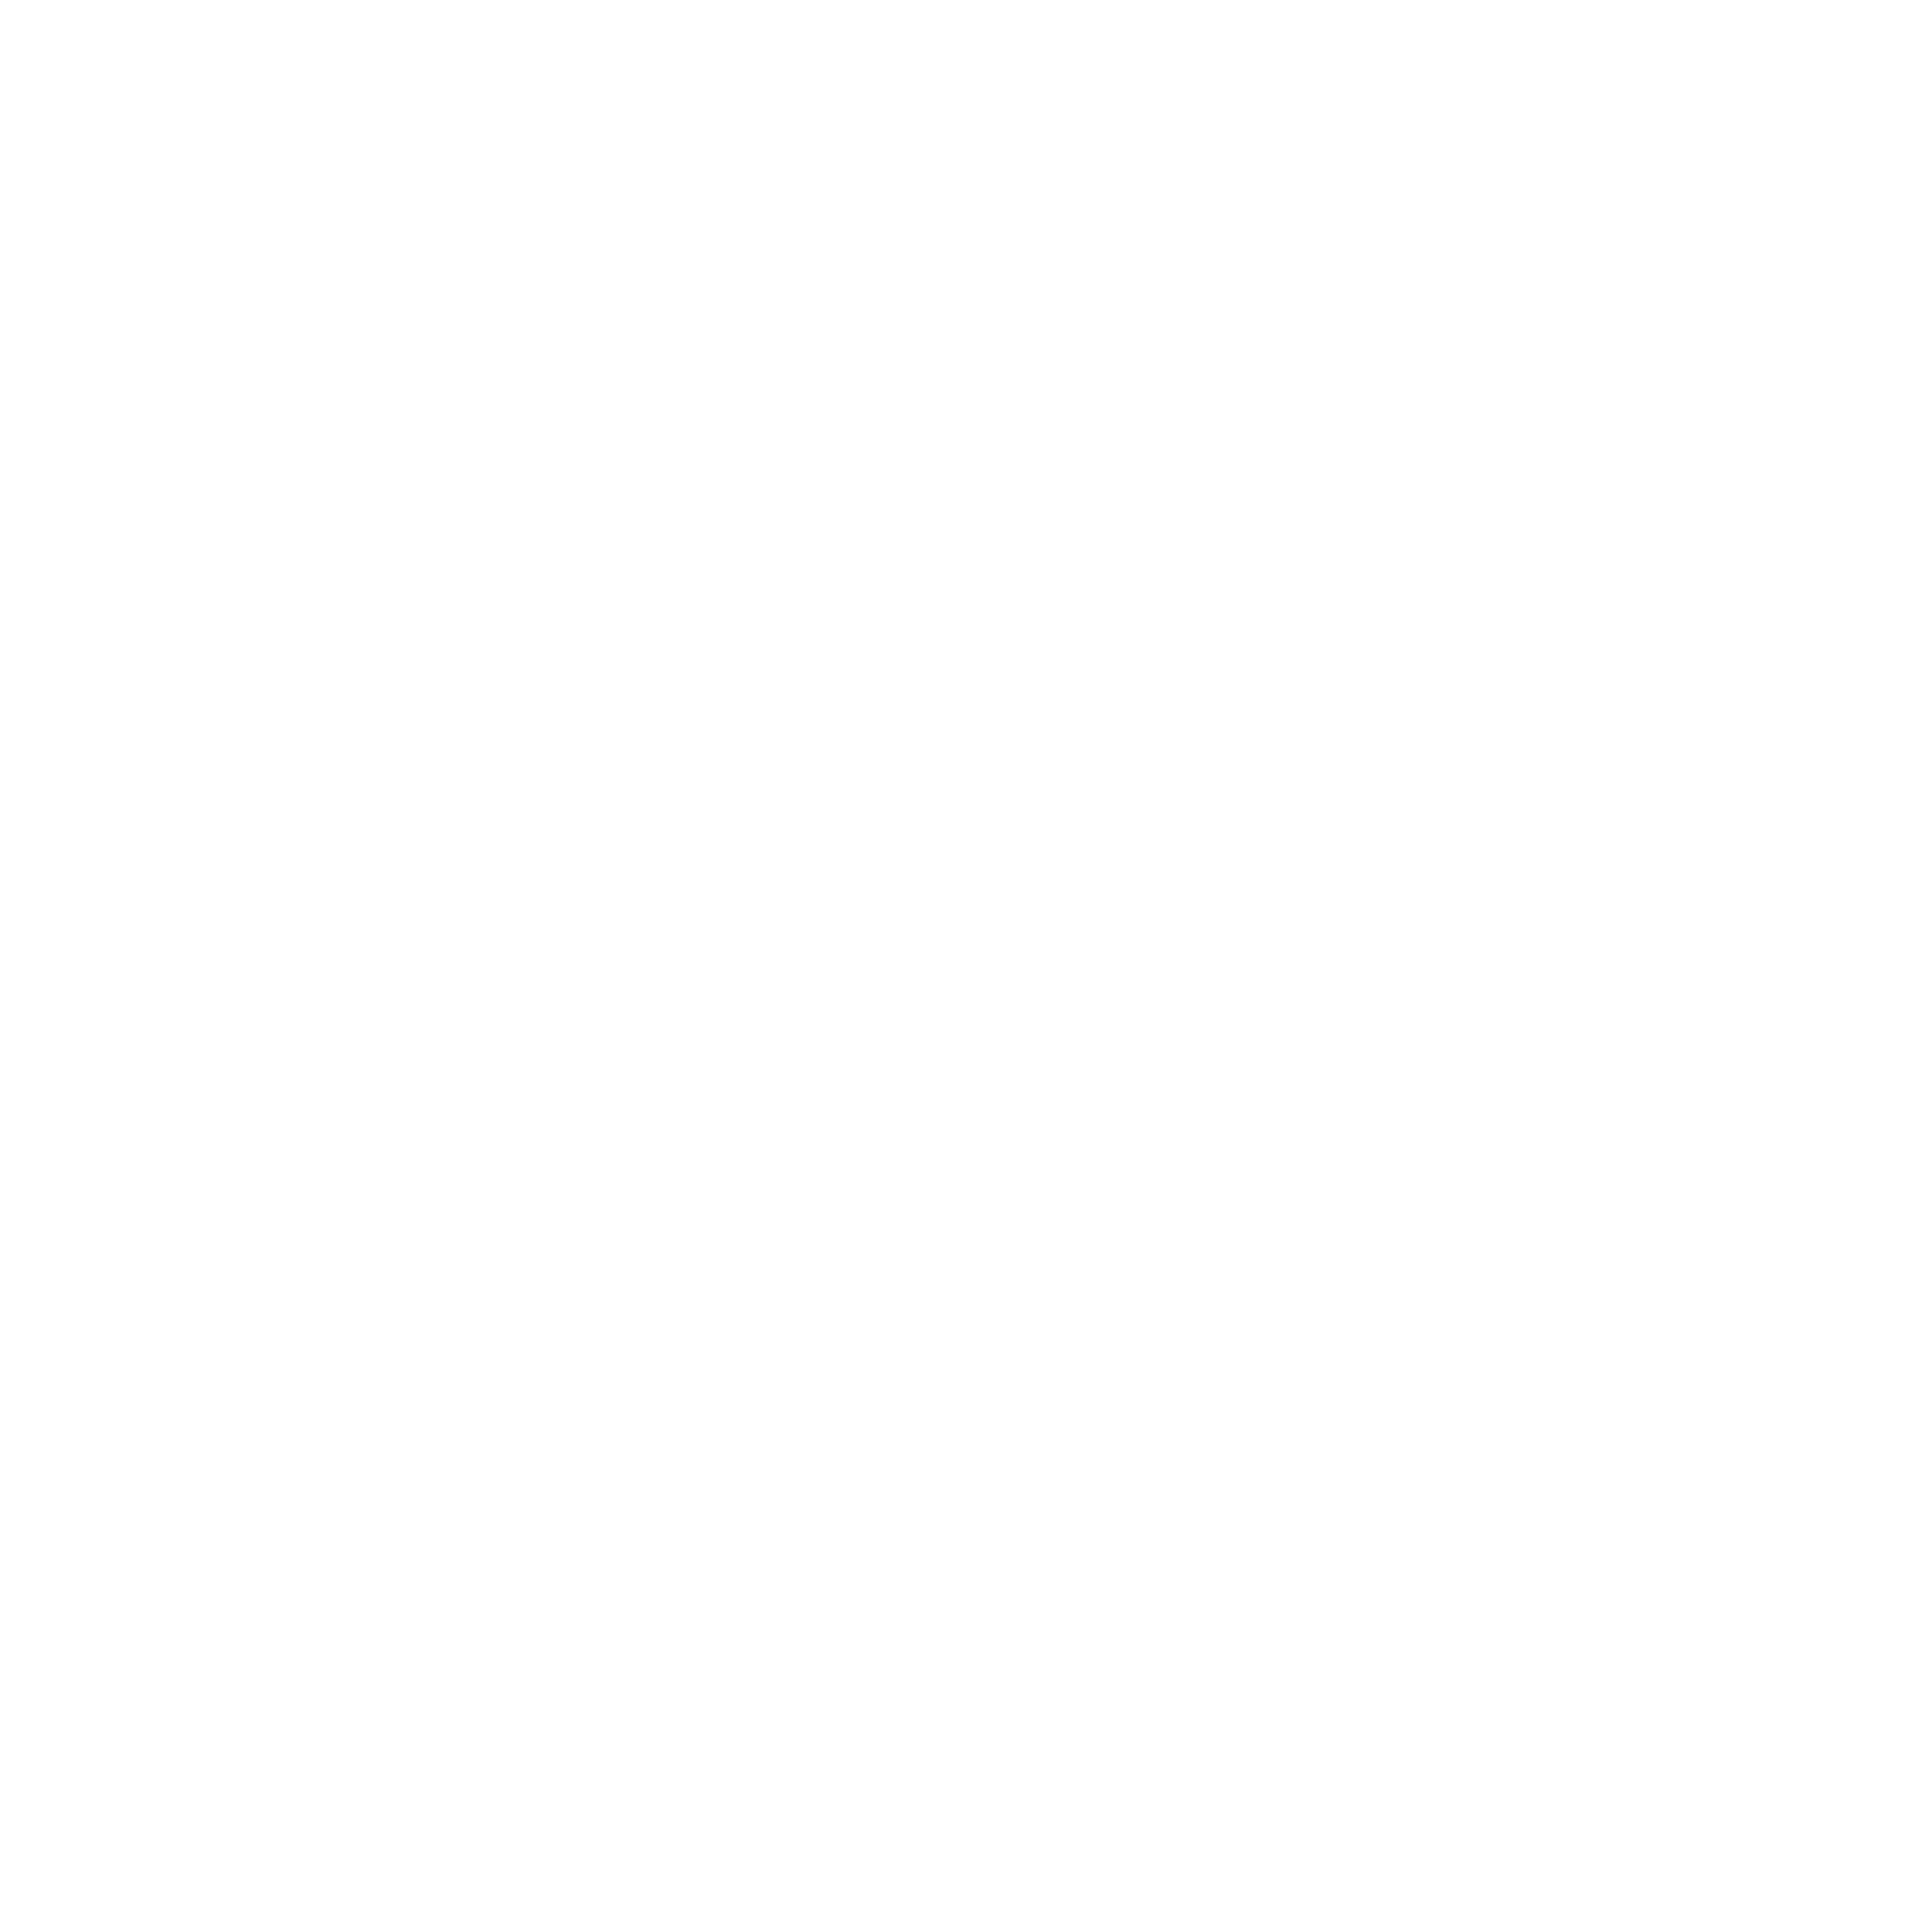 Der Buchstabe Q